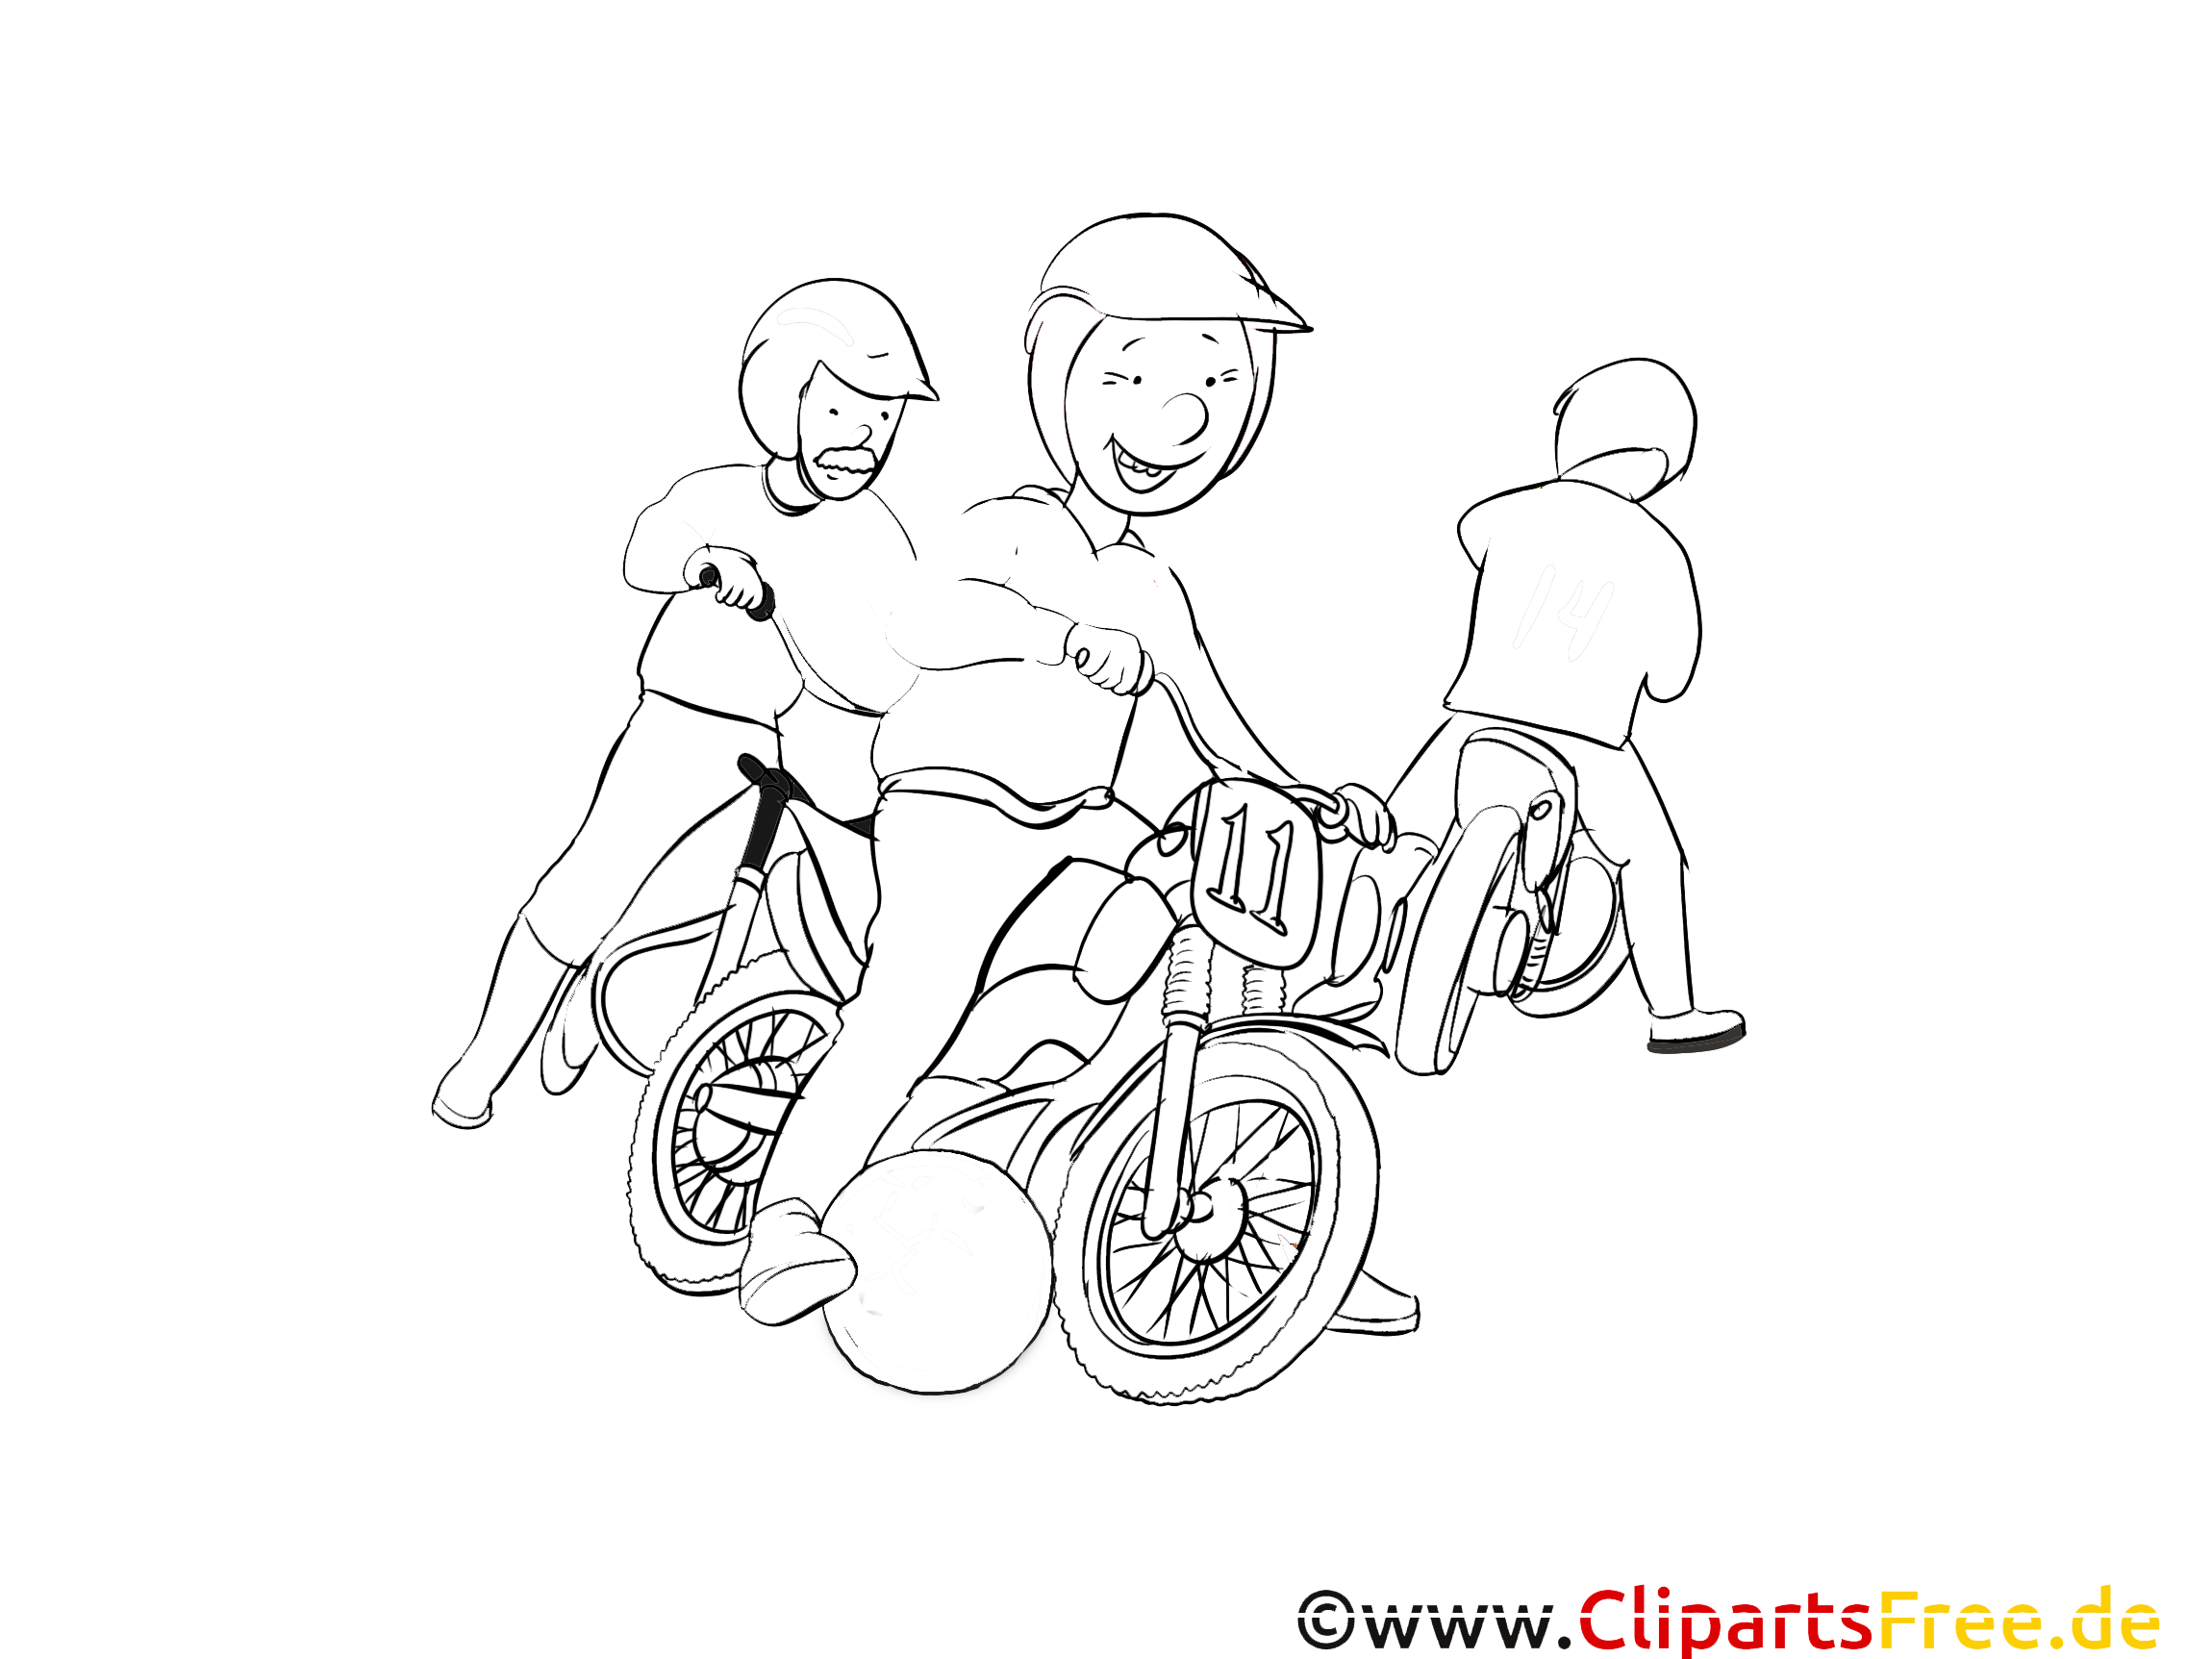 Moto-ball clipart – Sport dessins à colorier